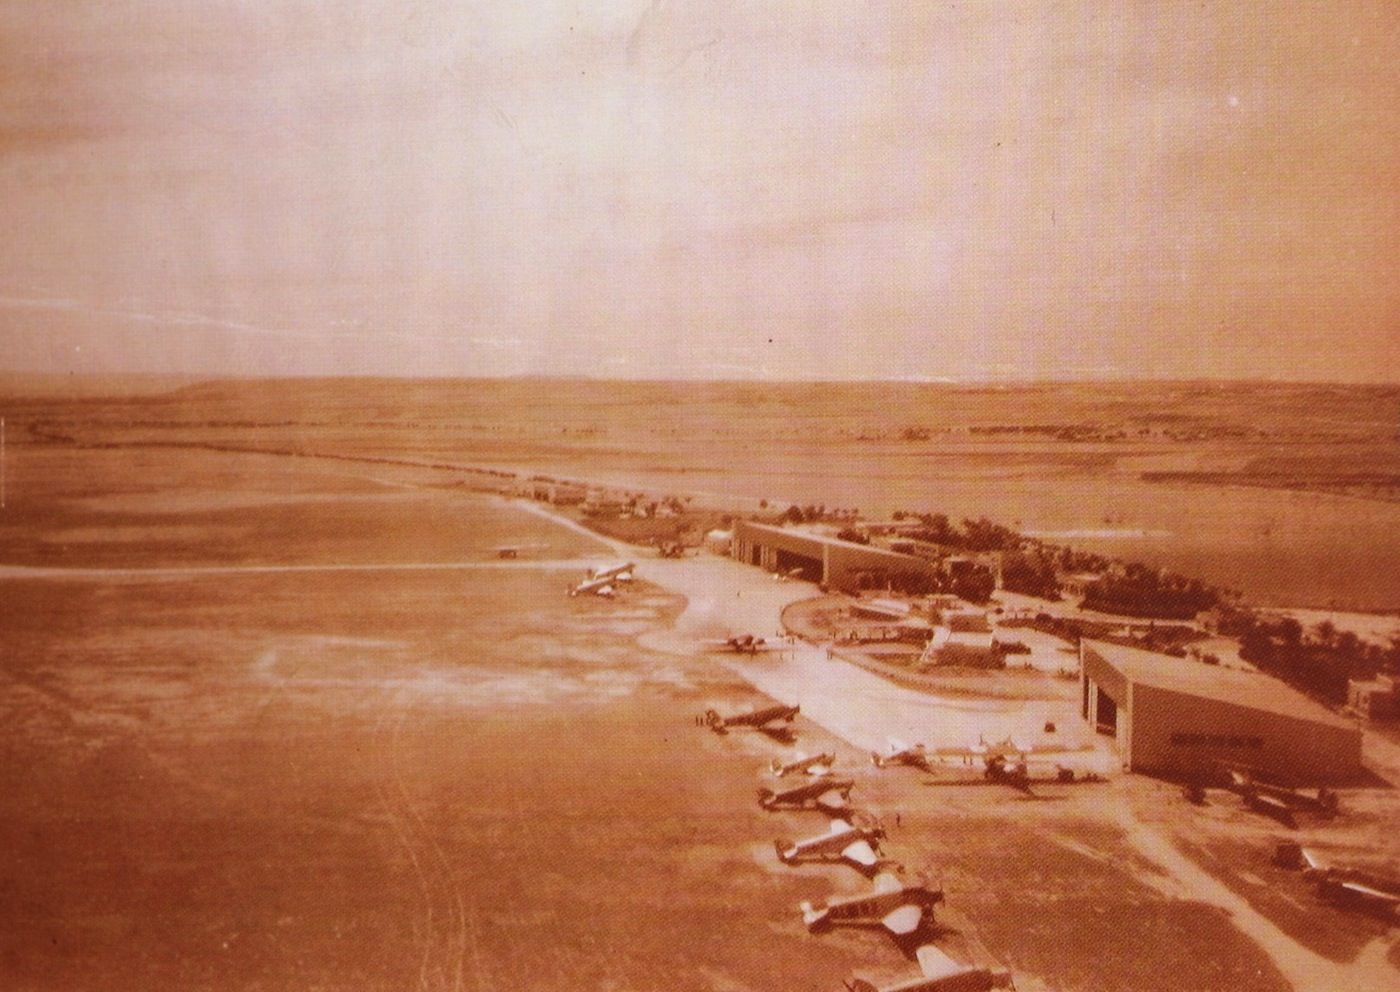 Vista aerea de la plataforma en el 1933, con el Nuevo Edifico Terminal